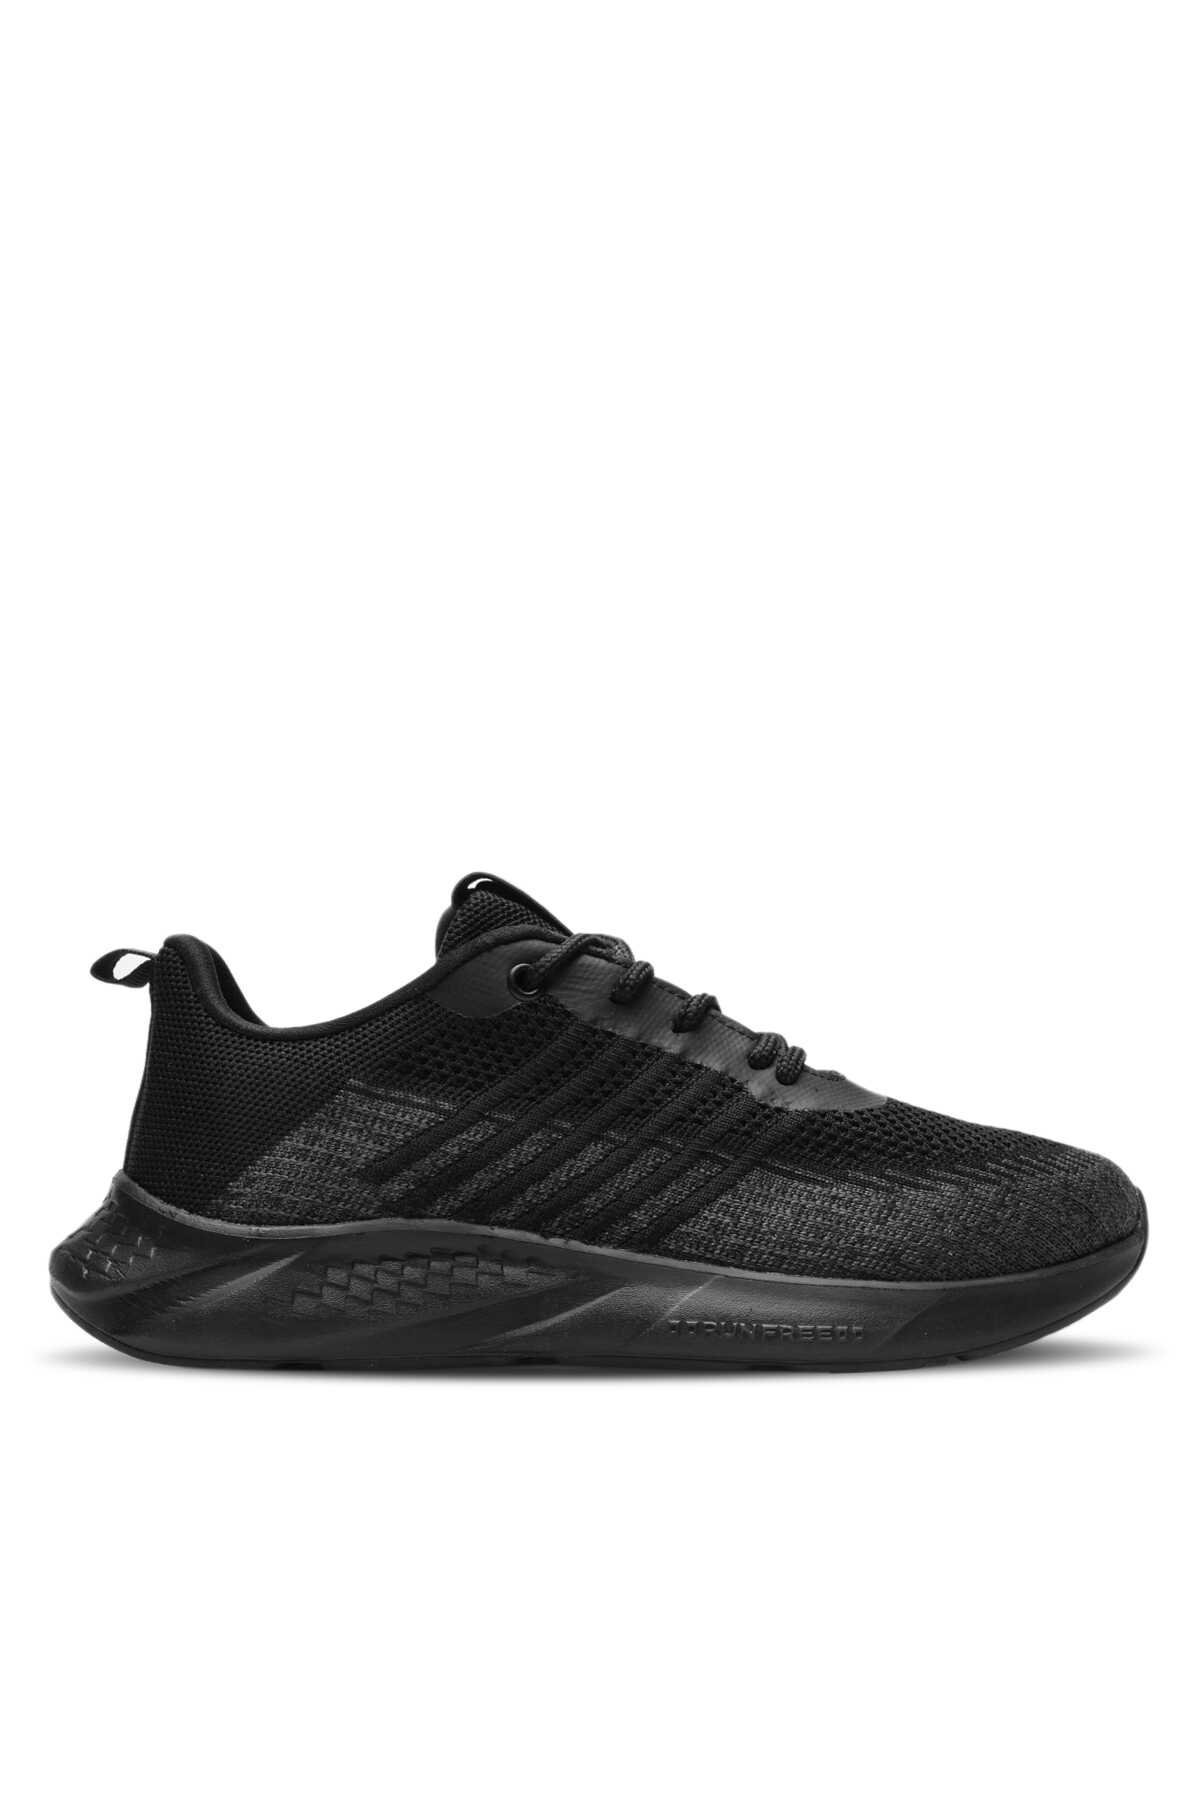 Slazenger - AESON Sneaker Erkek Ayakkabı Siyah / Siyah